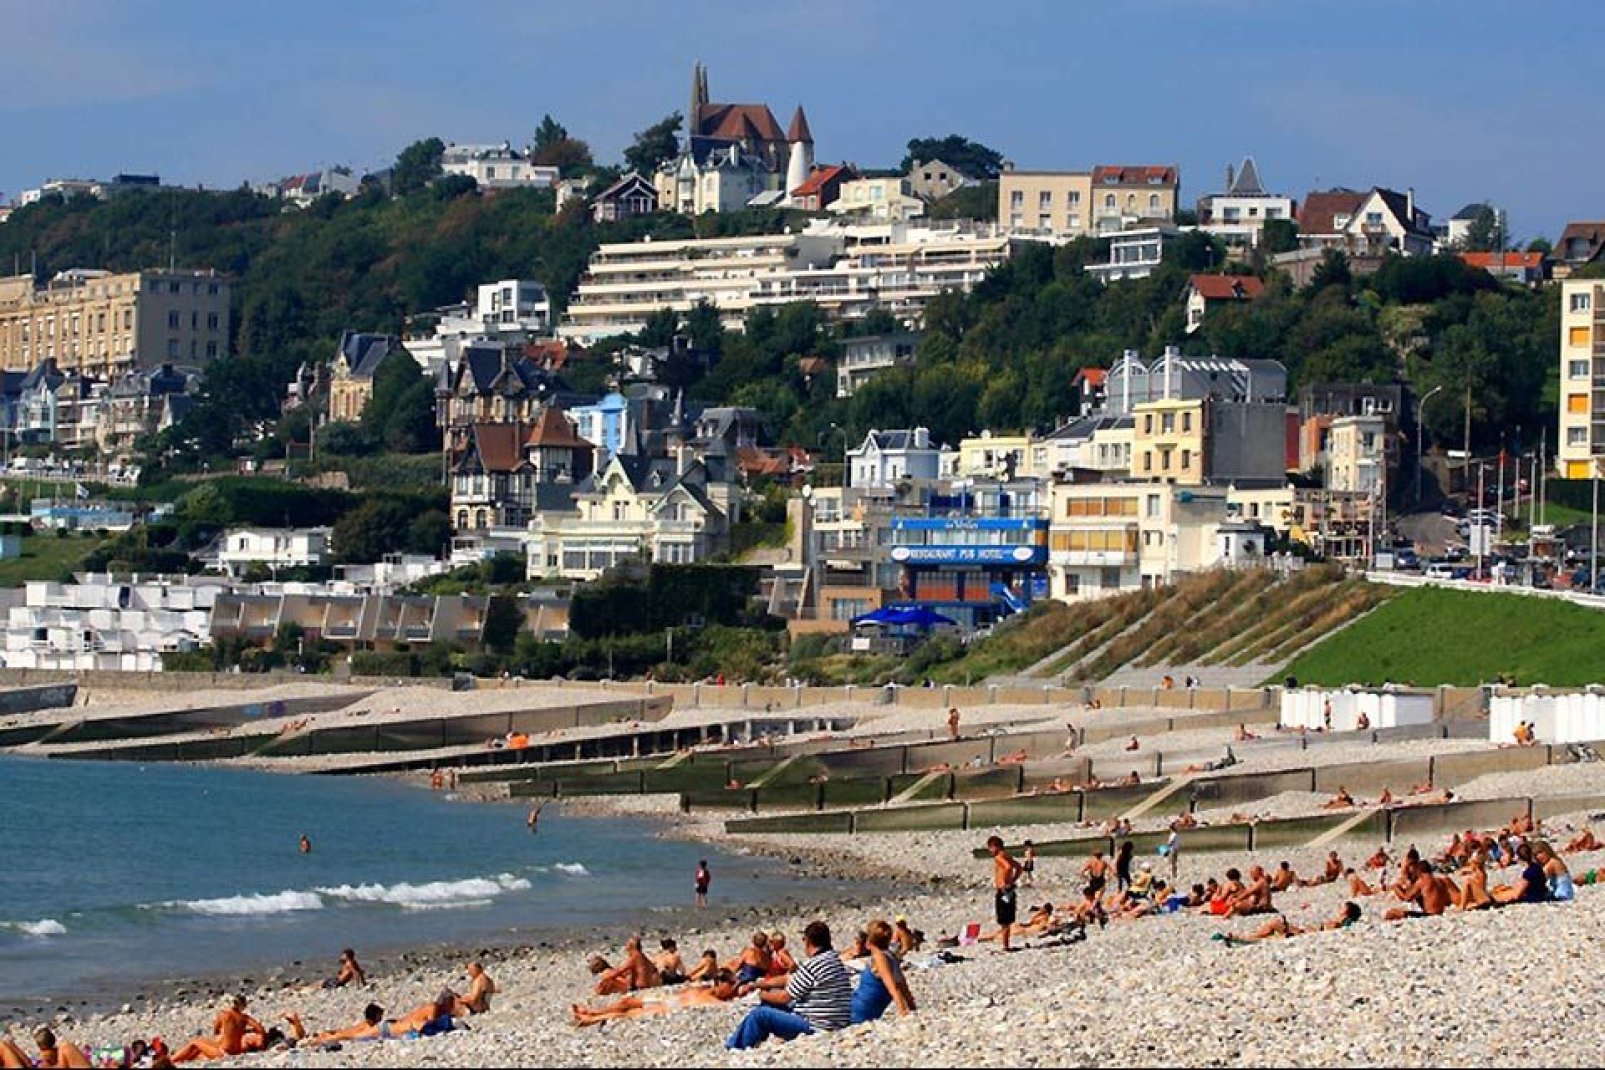 La ville du Havre a été classé station balnéaire en 1999. La plage propose notamment le plus grand skatepark à ciel ouvert de France.